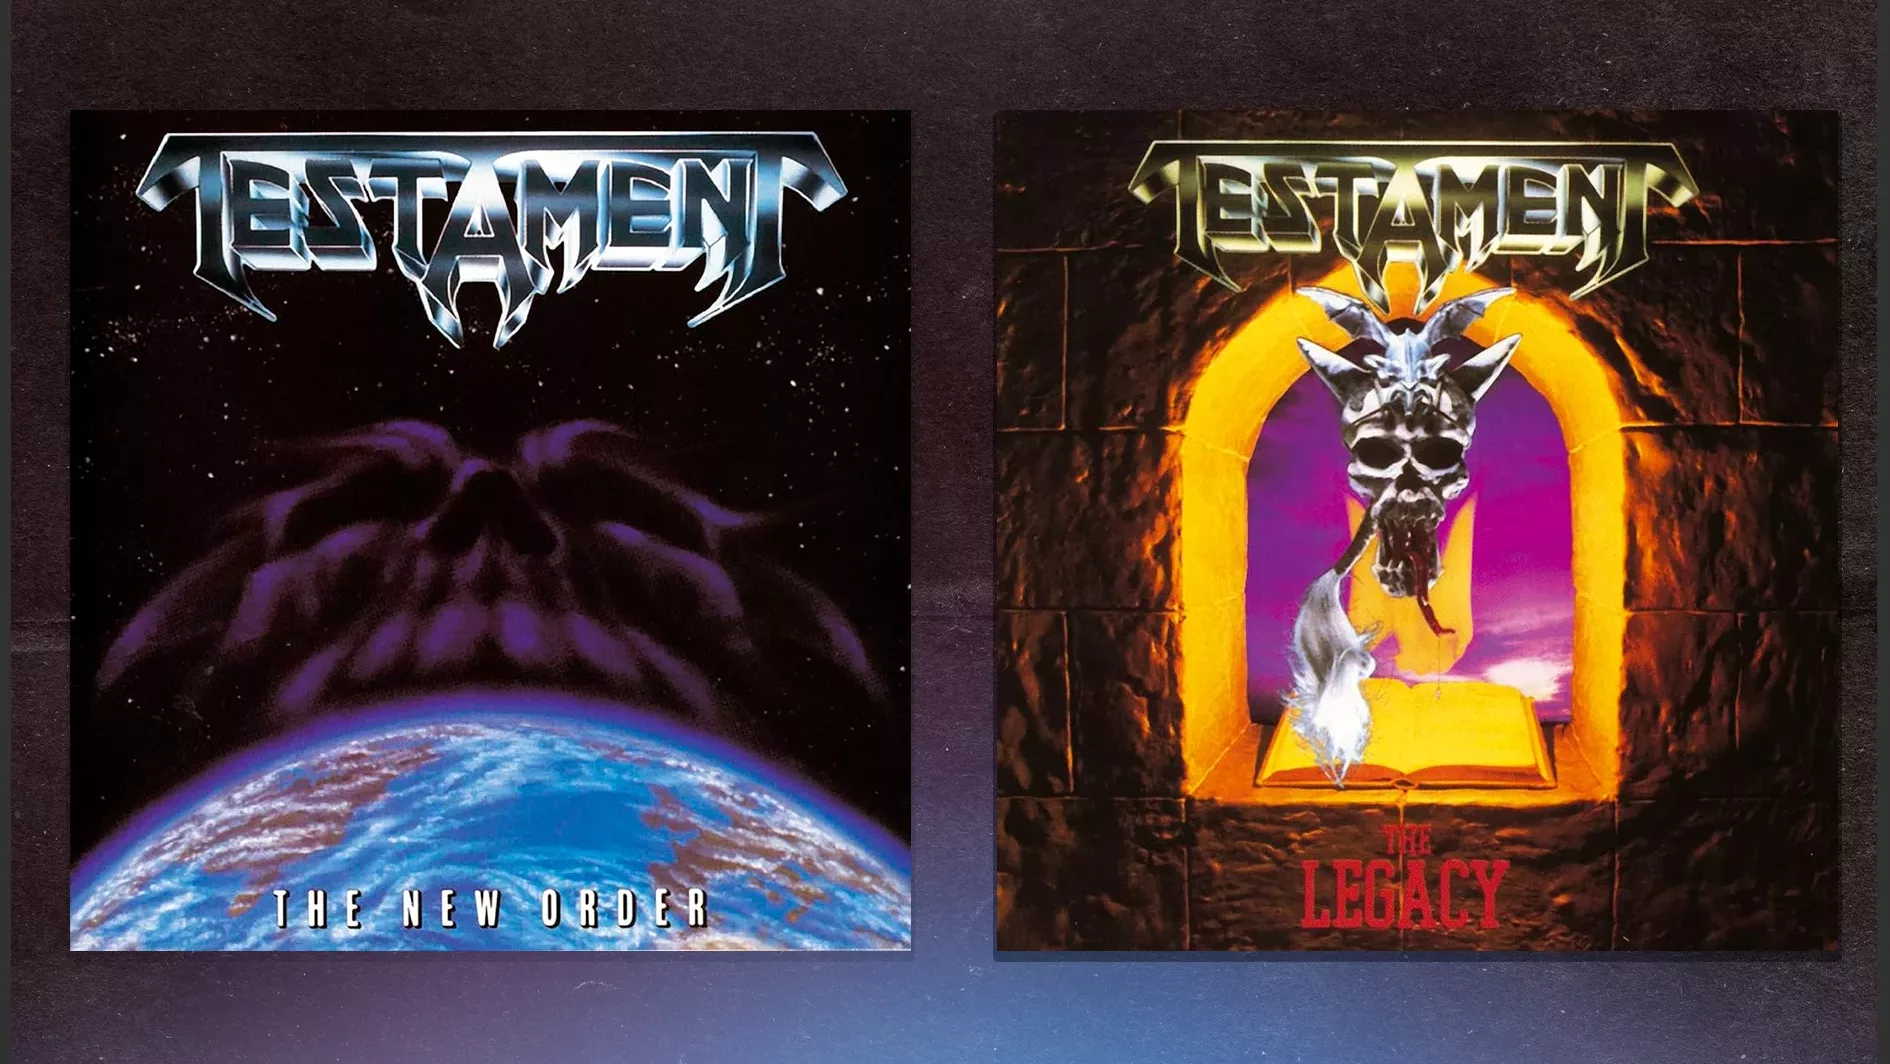 Dois primeiros álbuns do Testament são lançados em CD no Brasil pela primeira vez